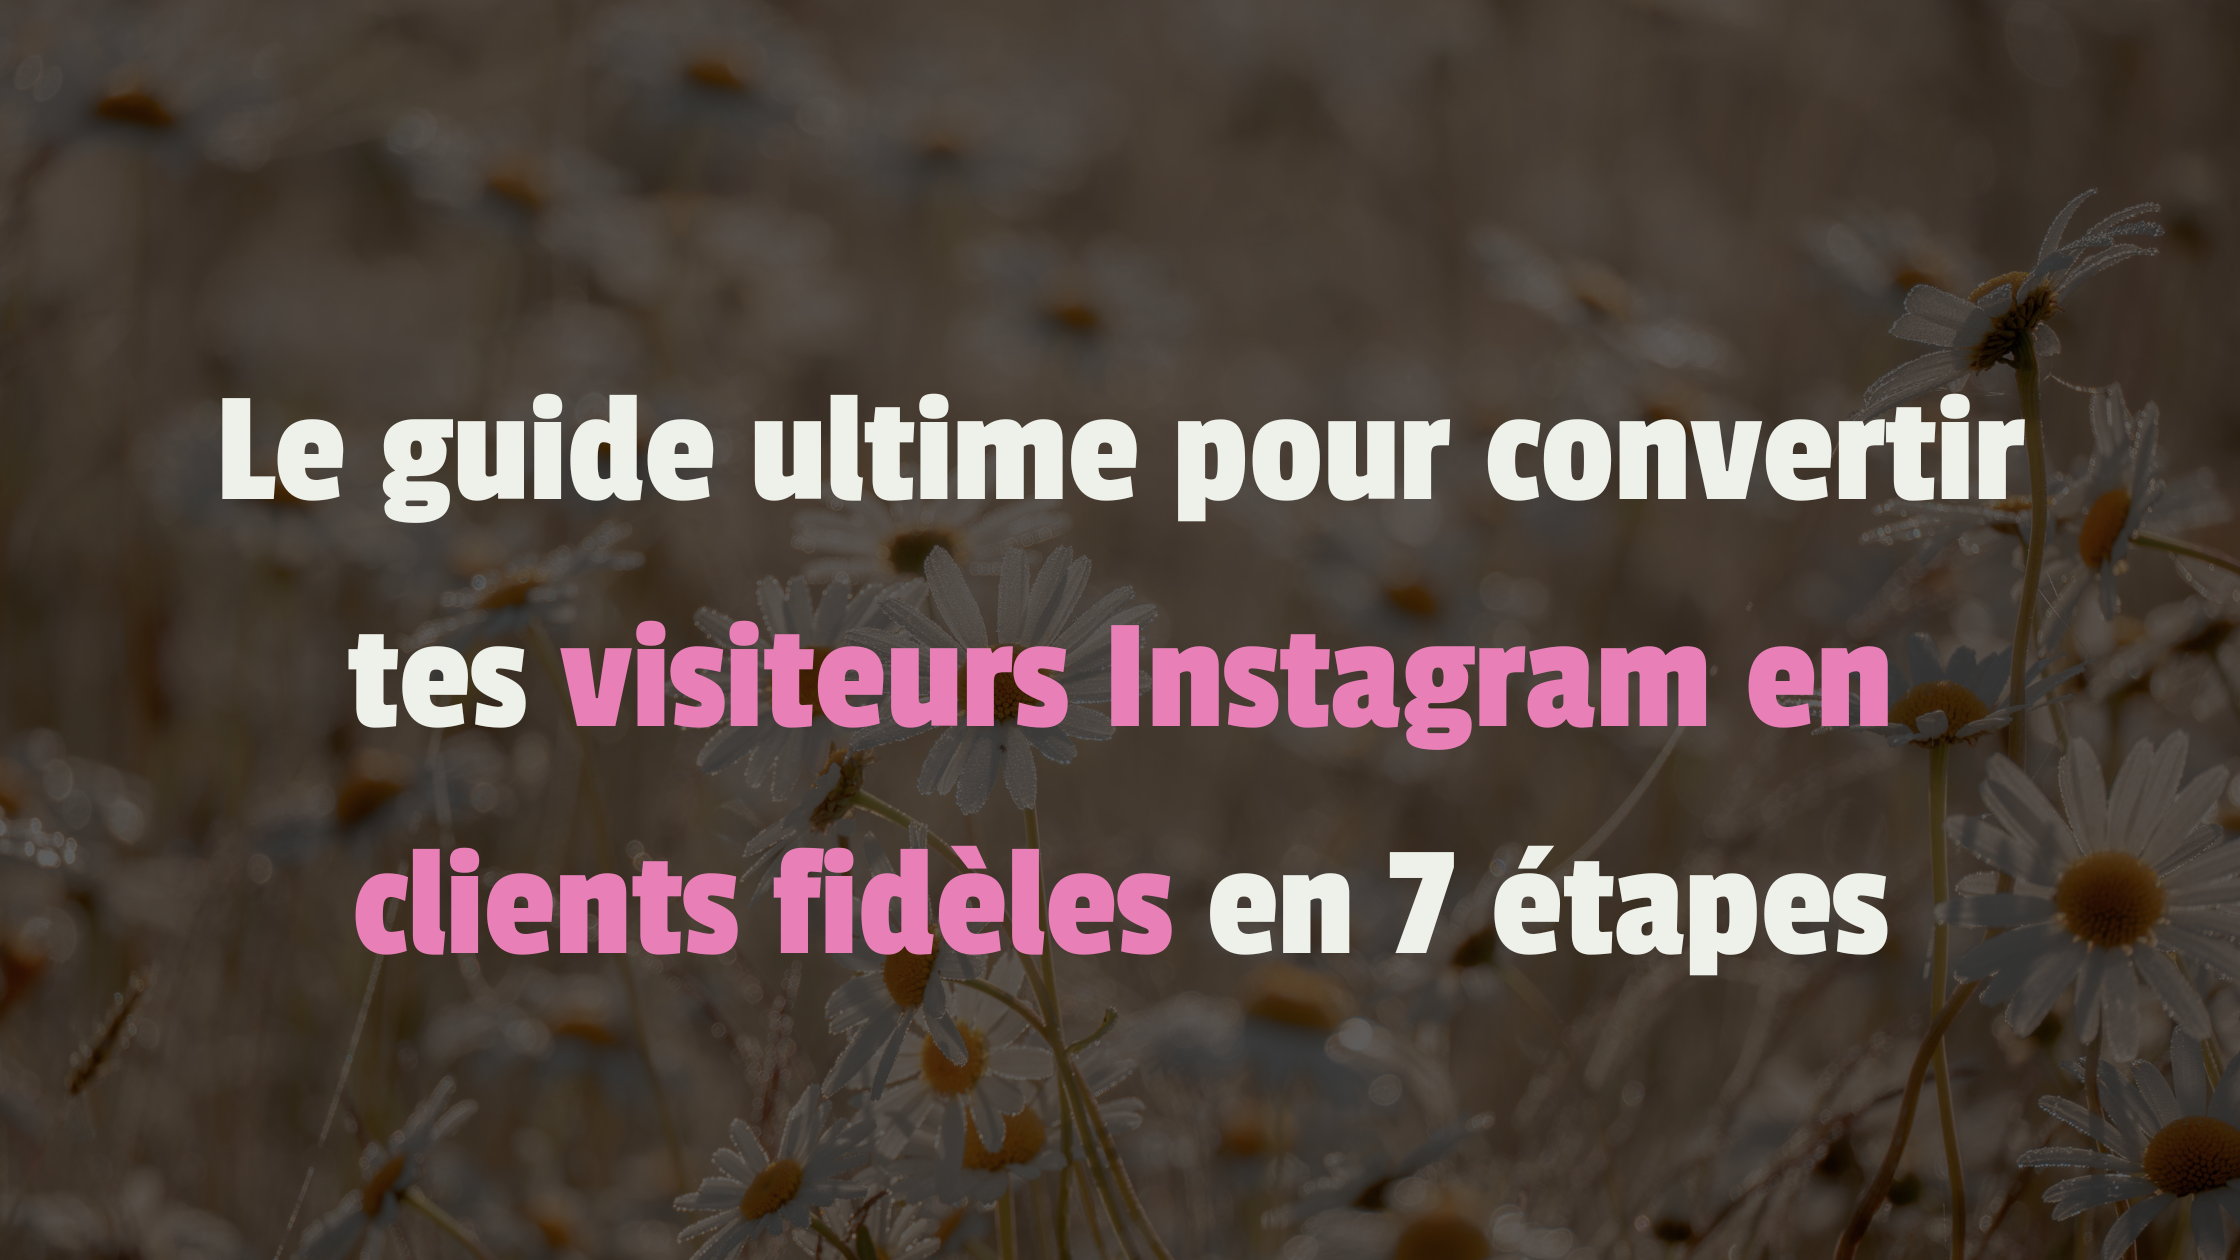 Le guide ultime pour convertir tes visiteurs Instagram en clients fidèles en 7 étapes